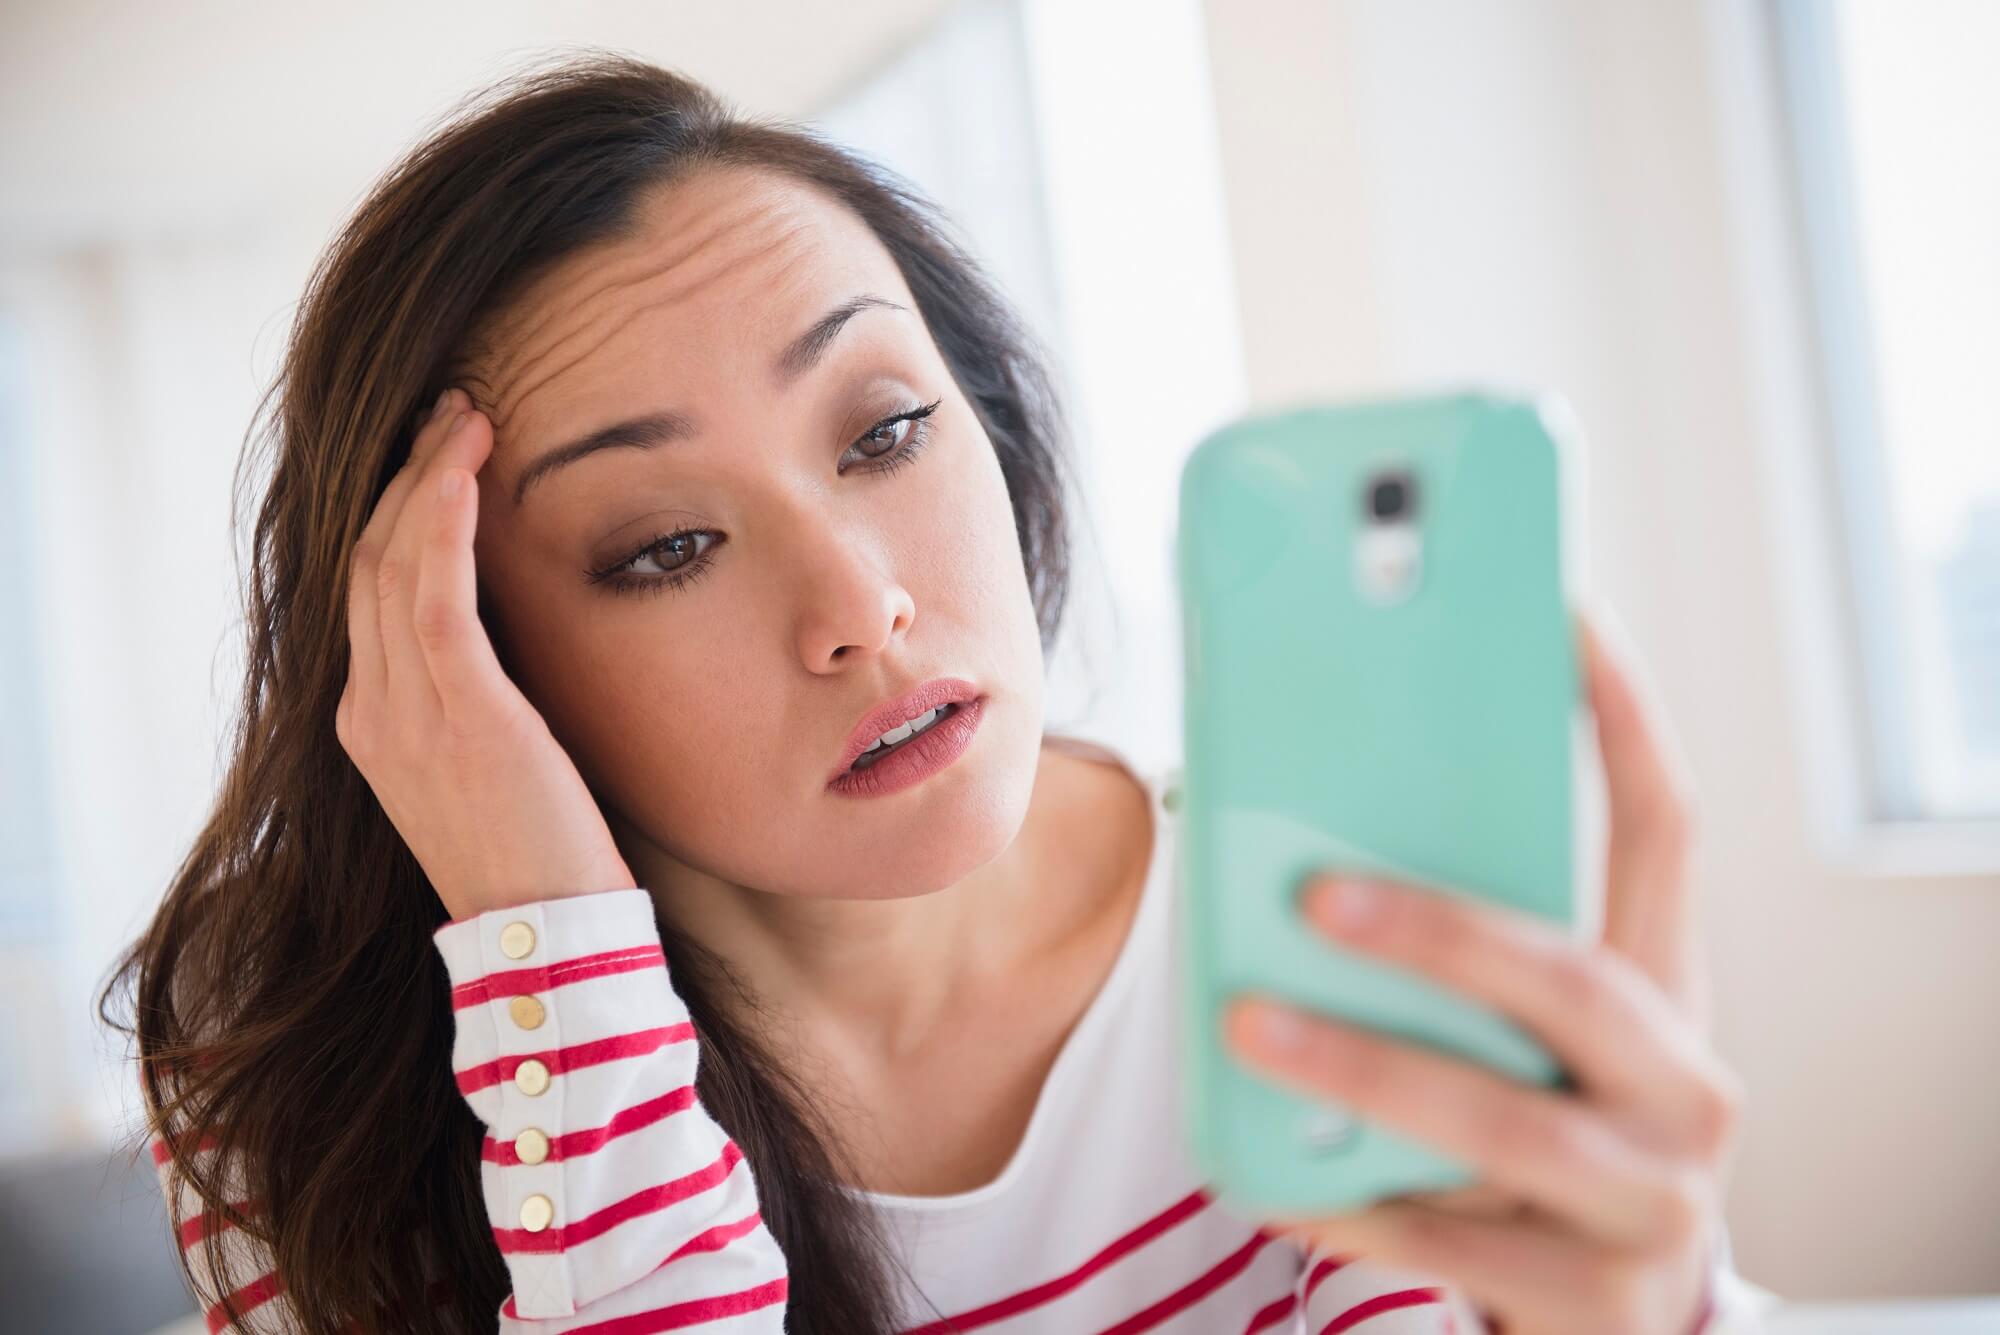 Përdorimi i zgjatur i smartfonit ju shkakton dhimbje koke